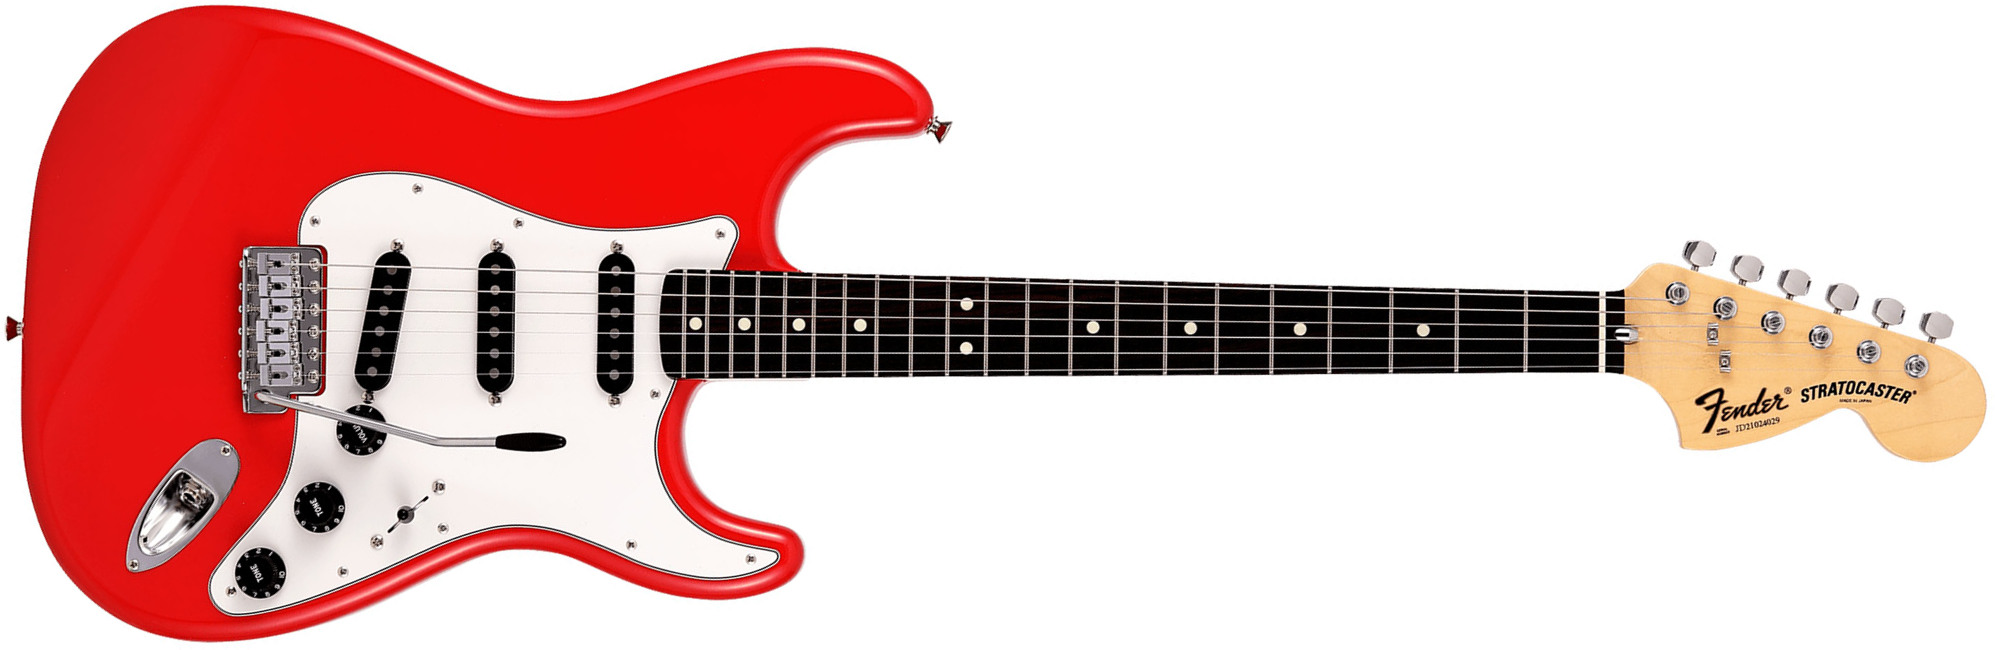 Fender Strat International Color Ltd Jap 3s Trem Rw - Morocco Red - Elektrische gitaar in Str-vorm - Main picture